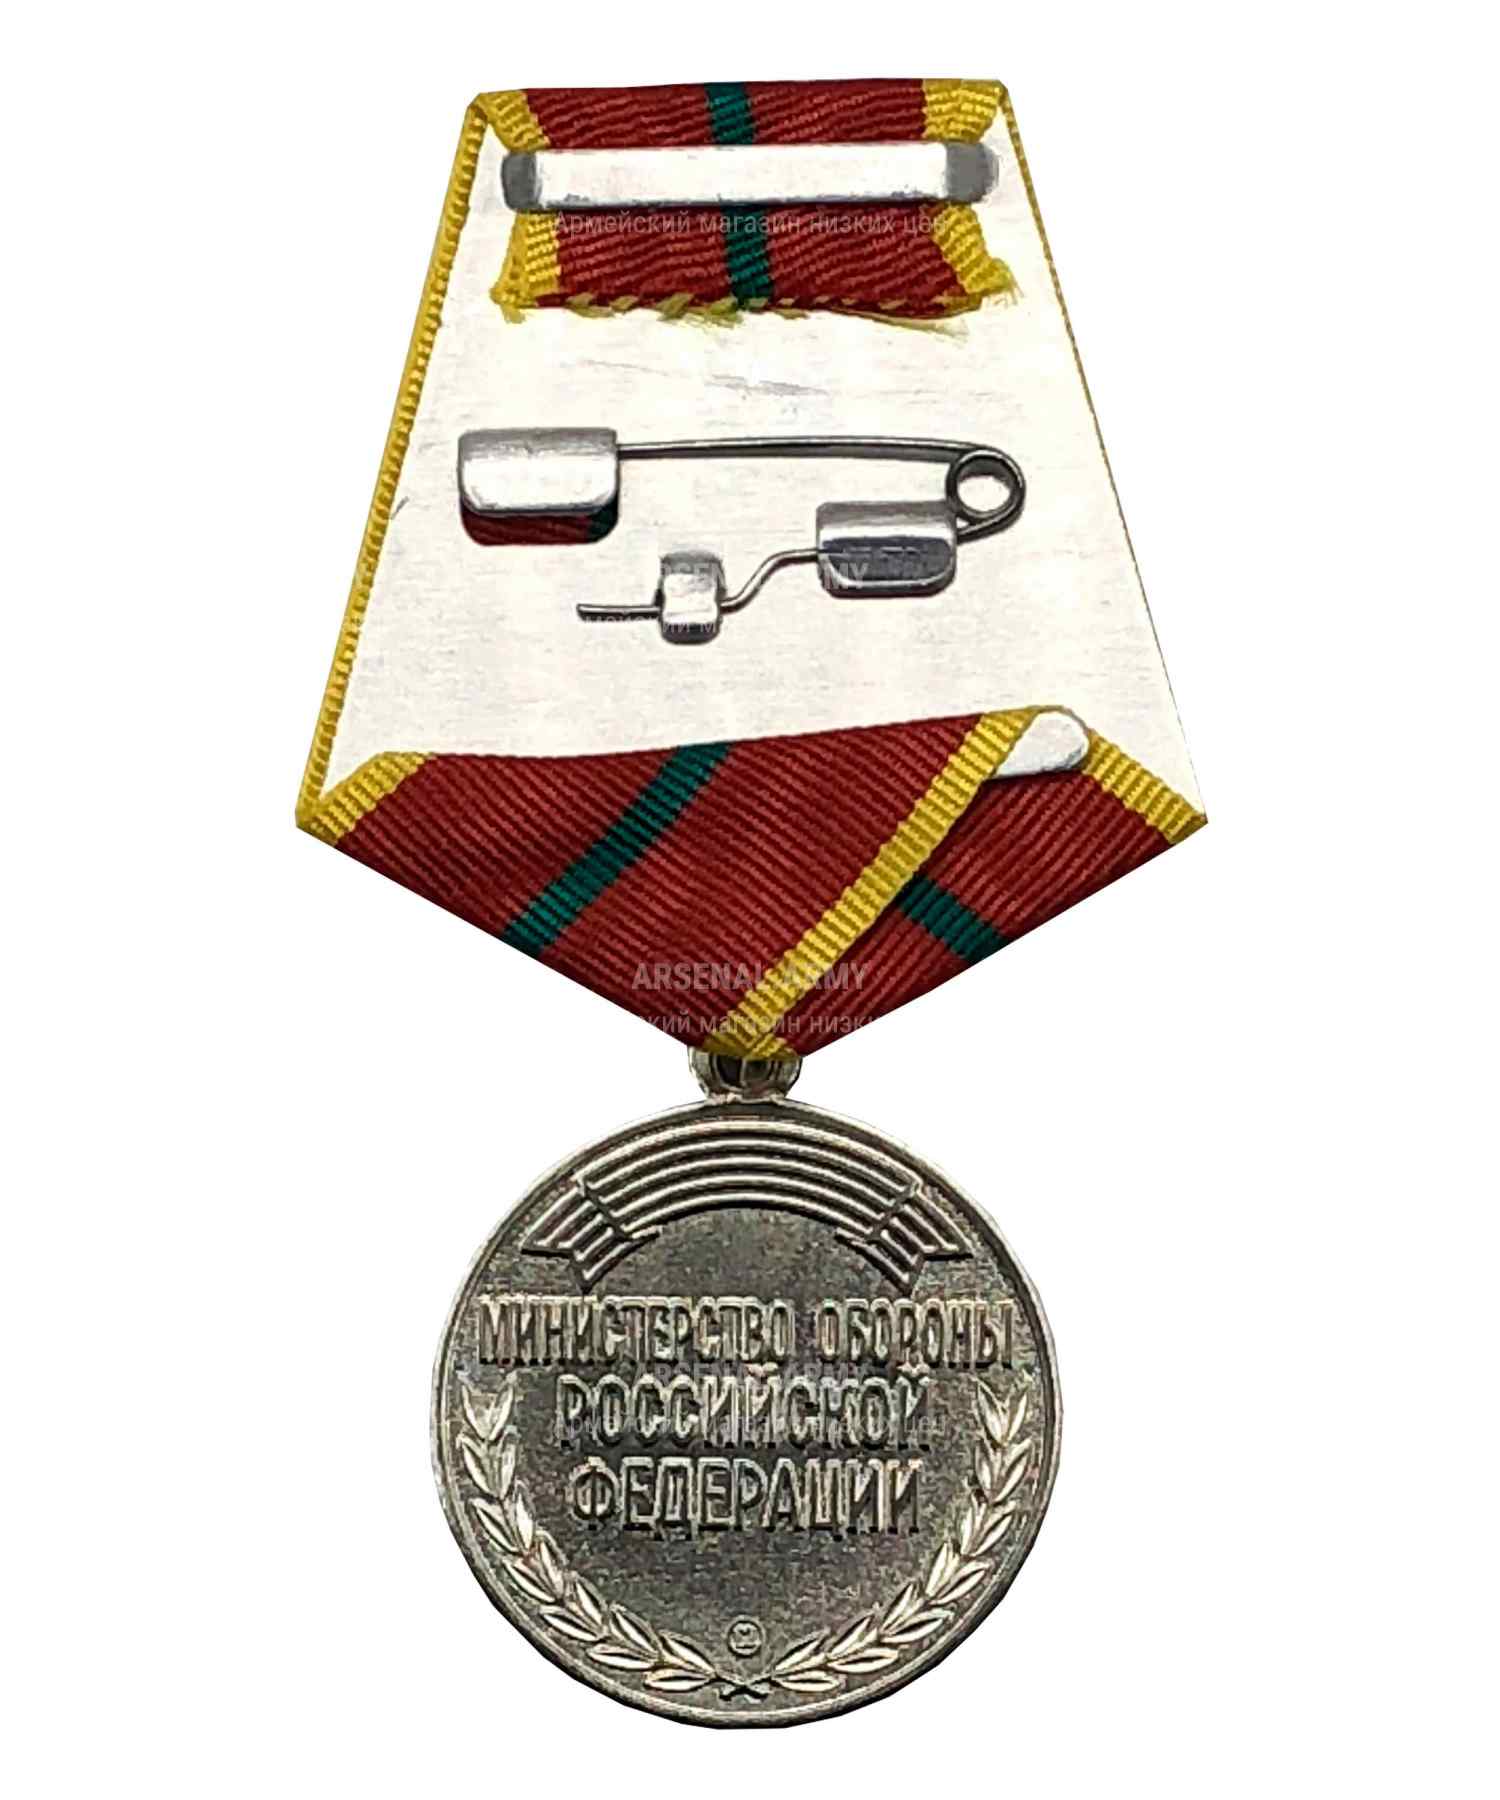 Медаль МО "За отличие в военной службе" 1 степени